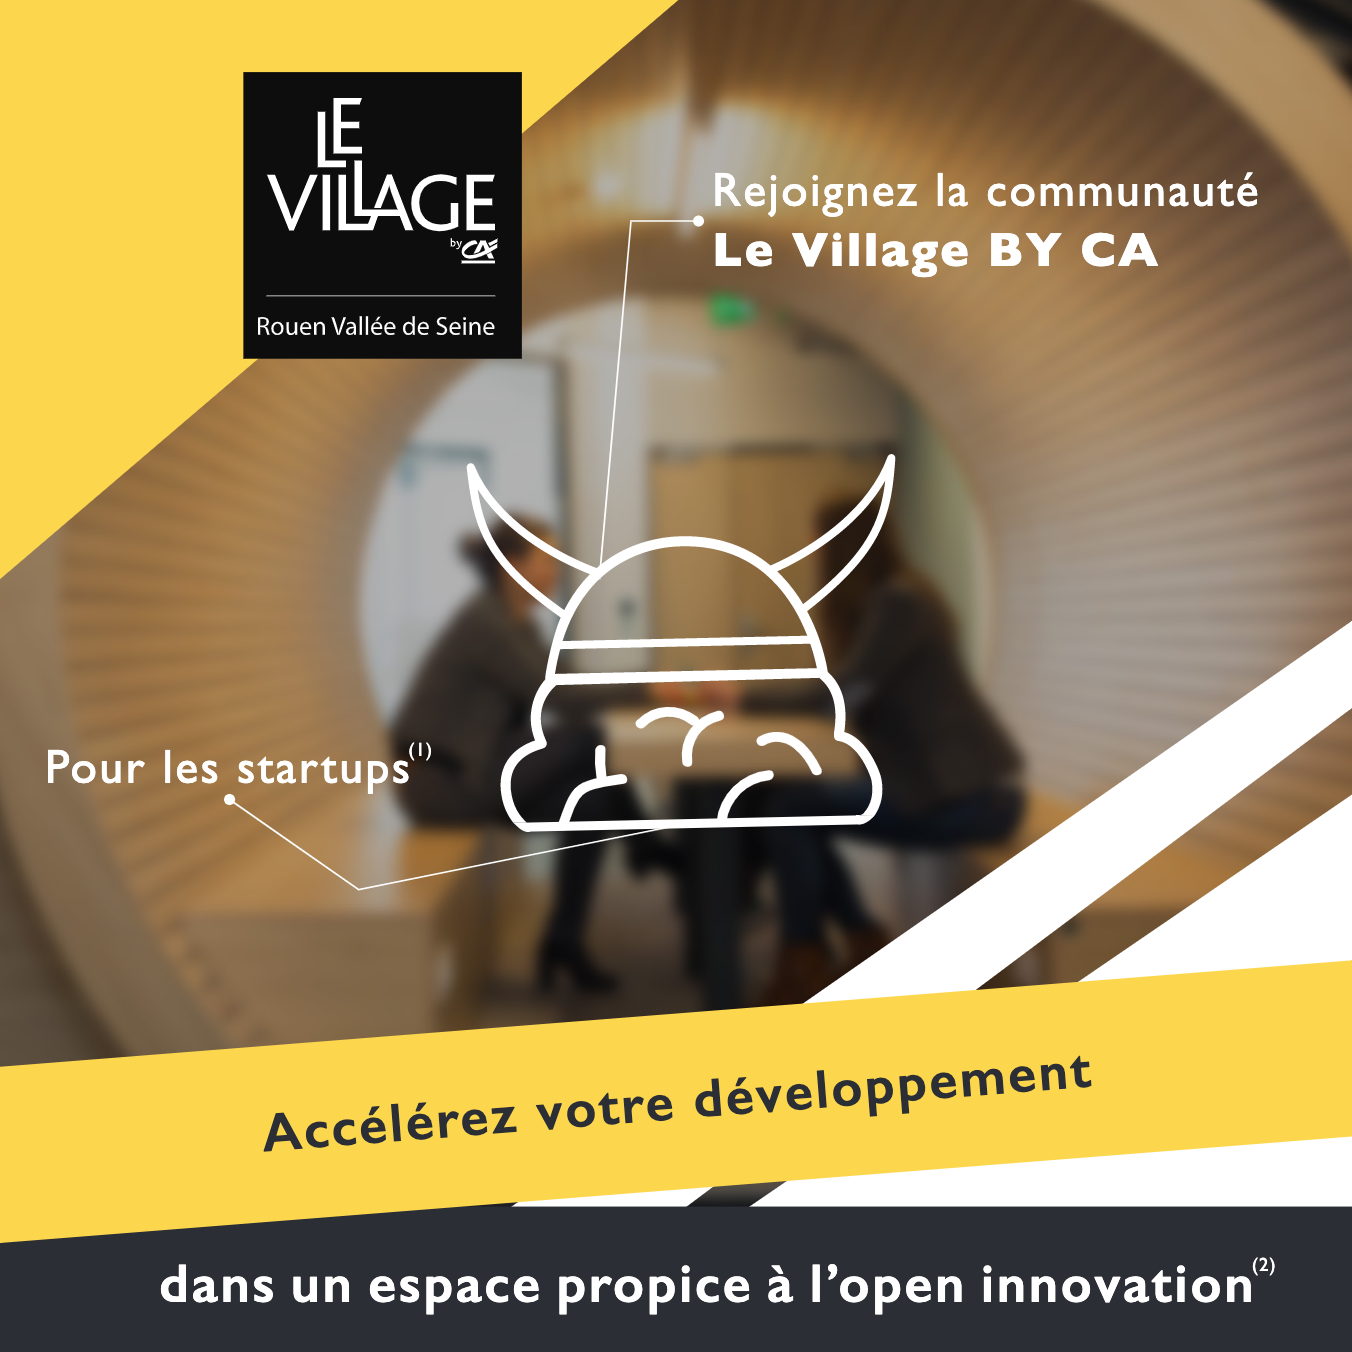 Rejoignez la communauté Le Village BY CA  Pour les startups  Accélérez votre développement   dans un espace propice à l'open innovation(4 